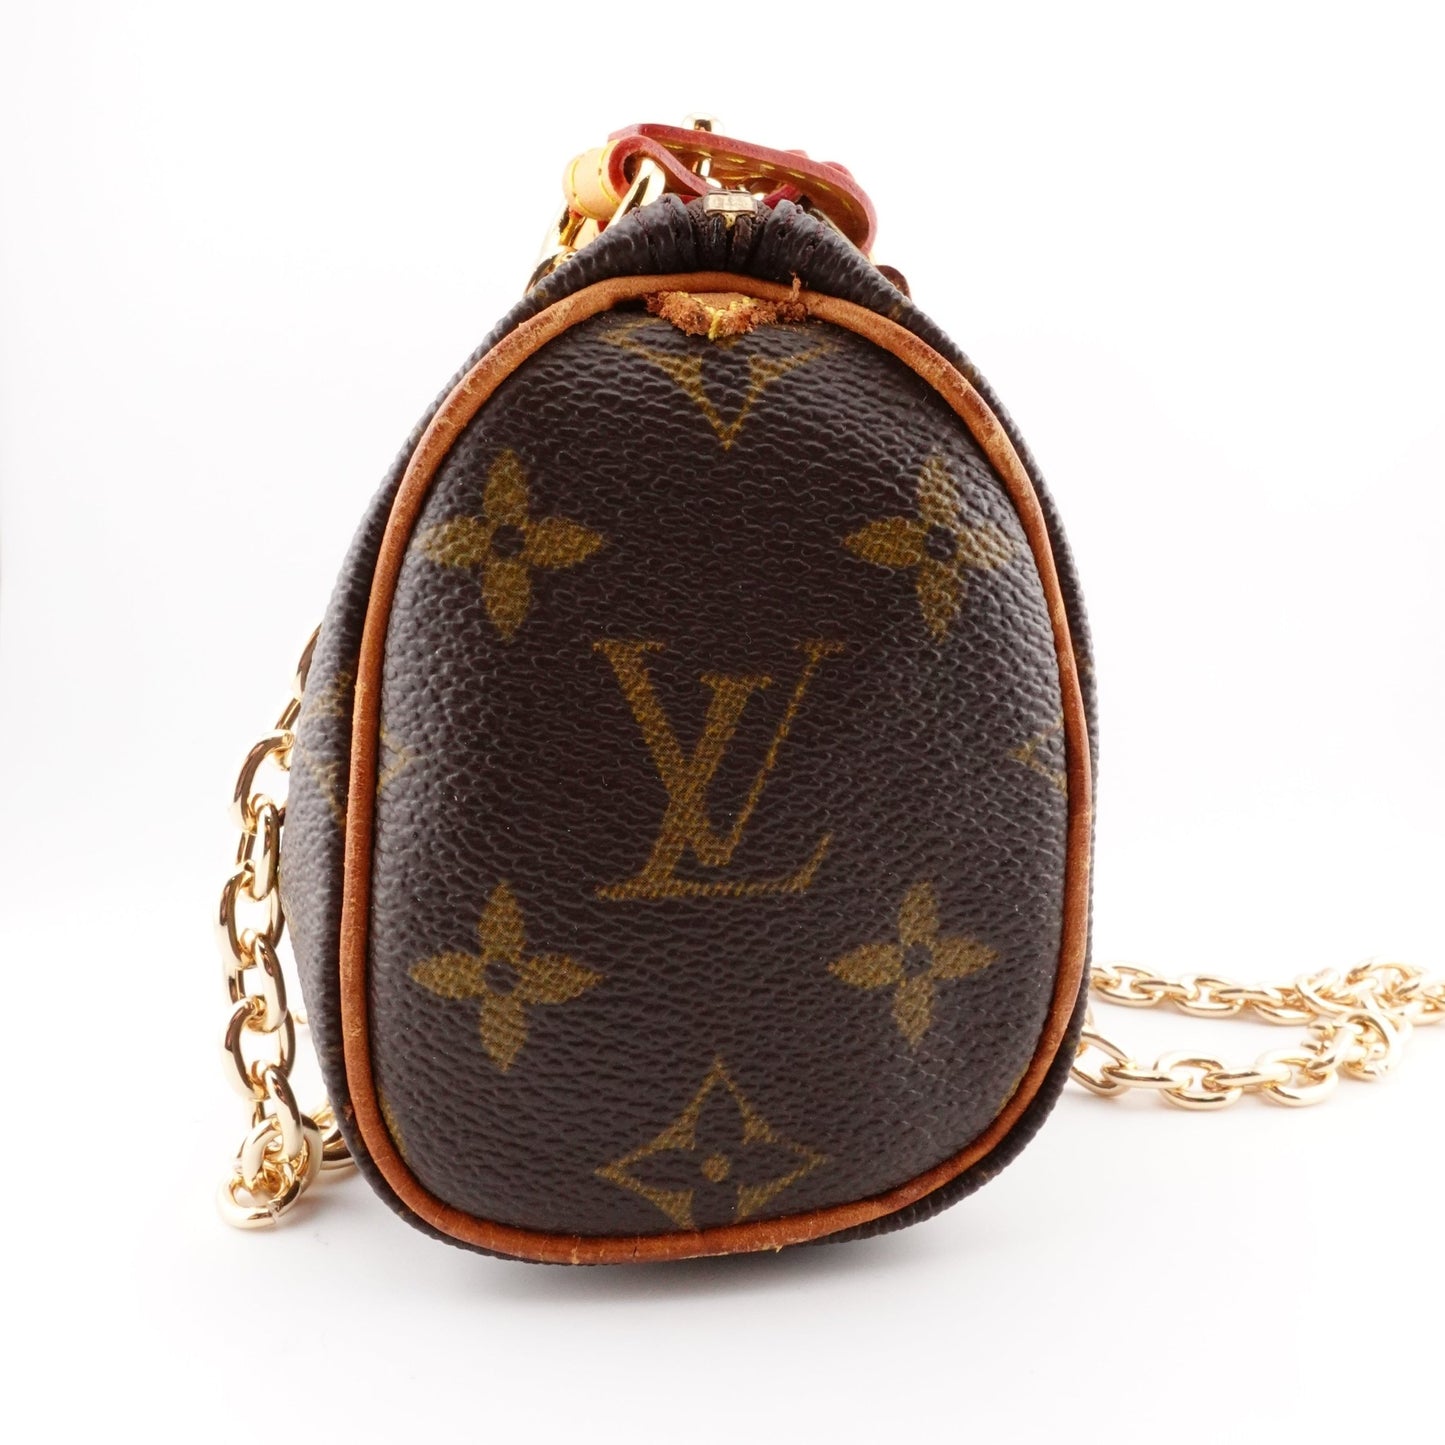 LOUIS VUITTON Monogram Mini Speedy with Chain Straps - Bag Envy